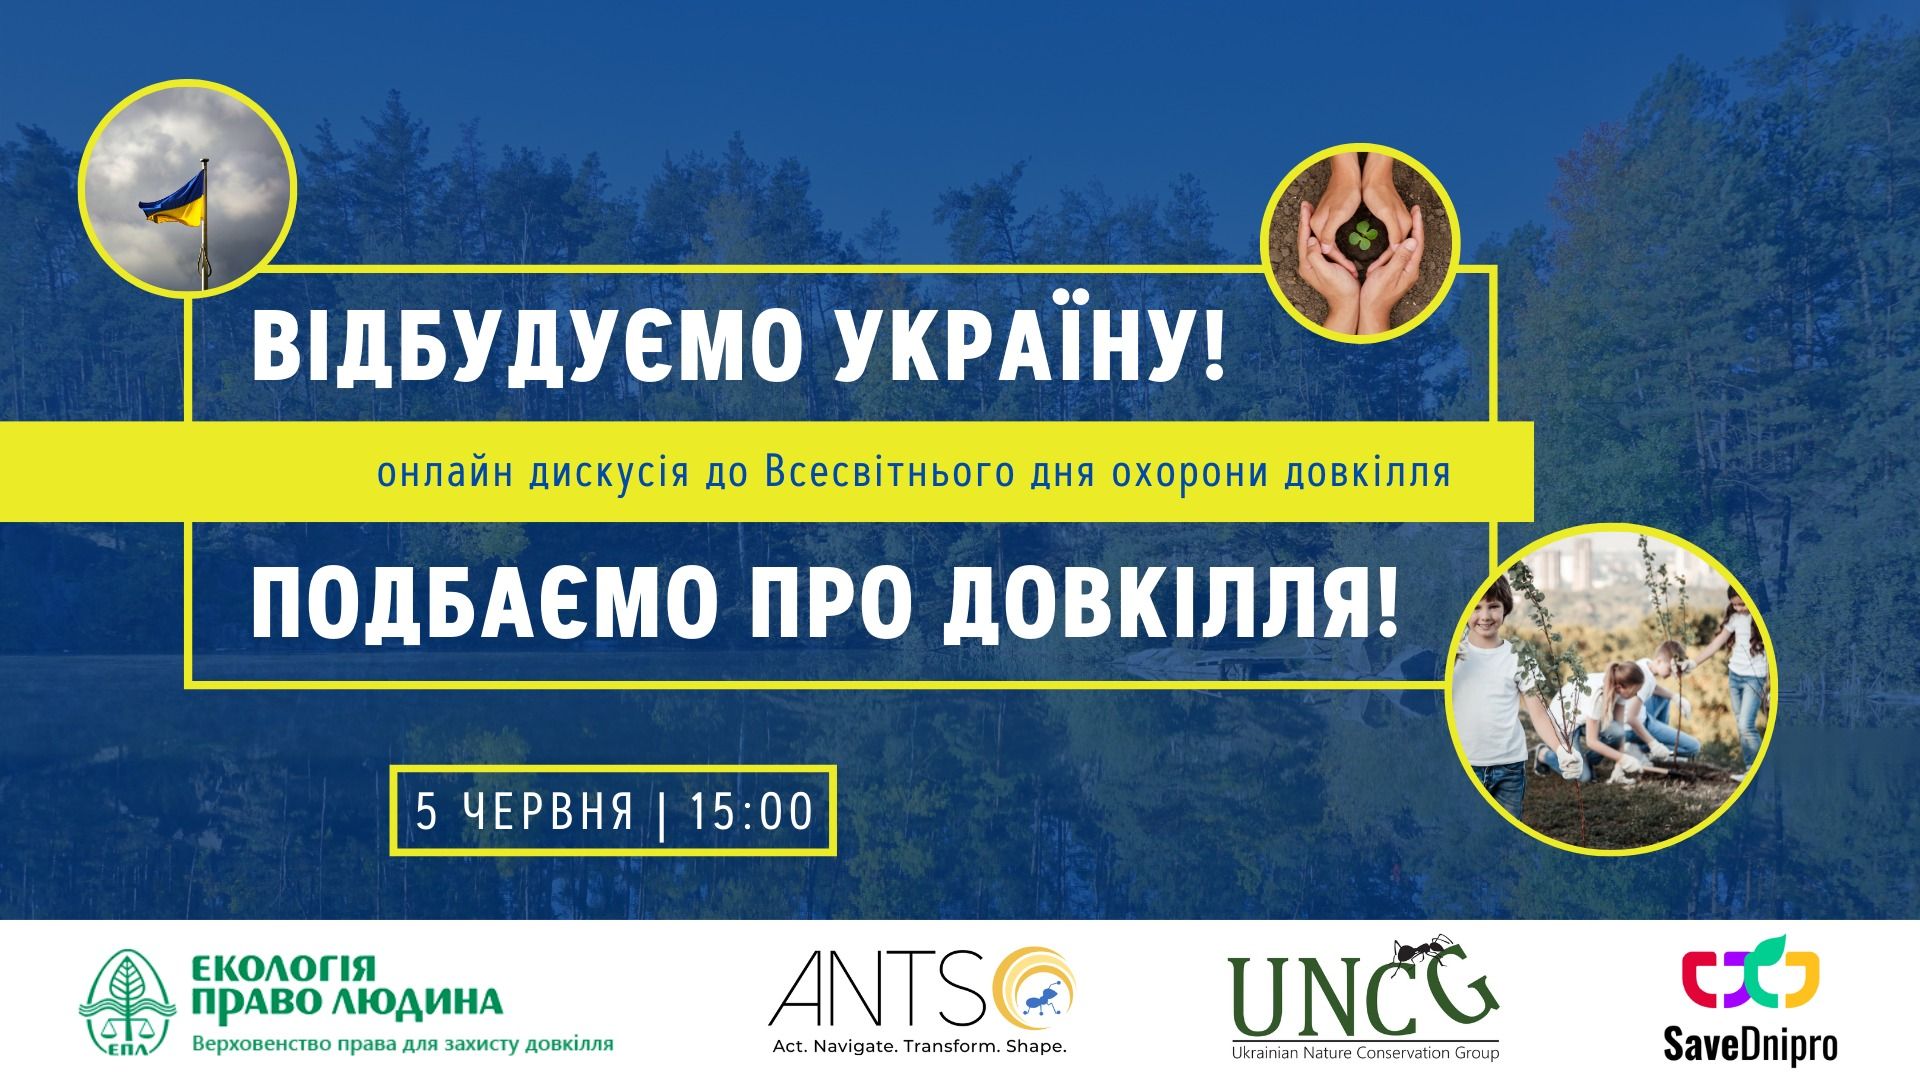 5 червня — онлайн-дискусія «Відбудуємо Україну! Подбаємо про довкілля!»